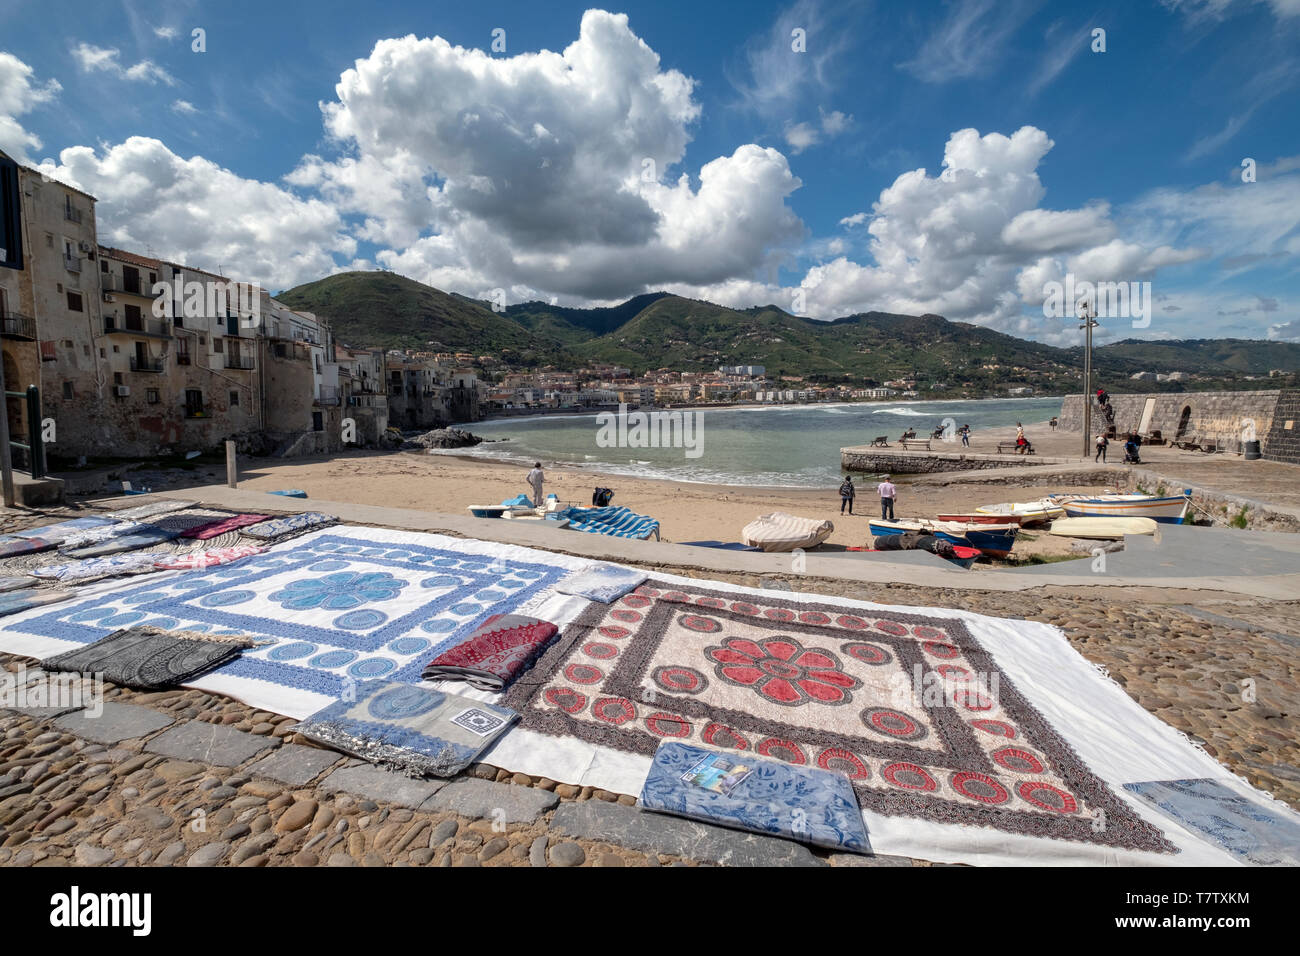 Un tapis ventes de marchandises, et ce, sur la plage, à Cefalu, en Sicile. Banque D'Images